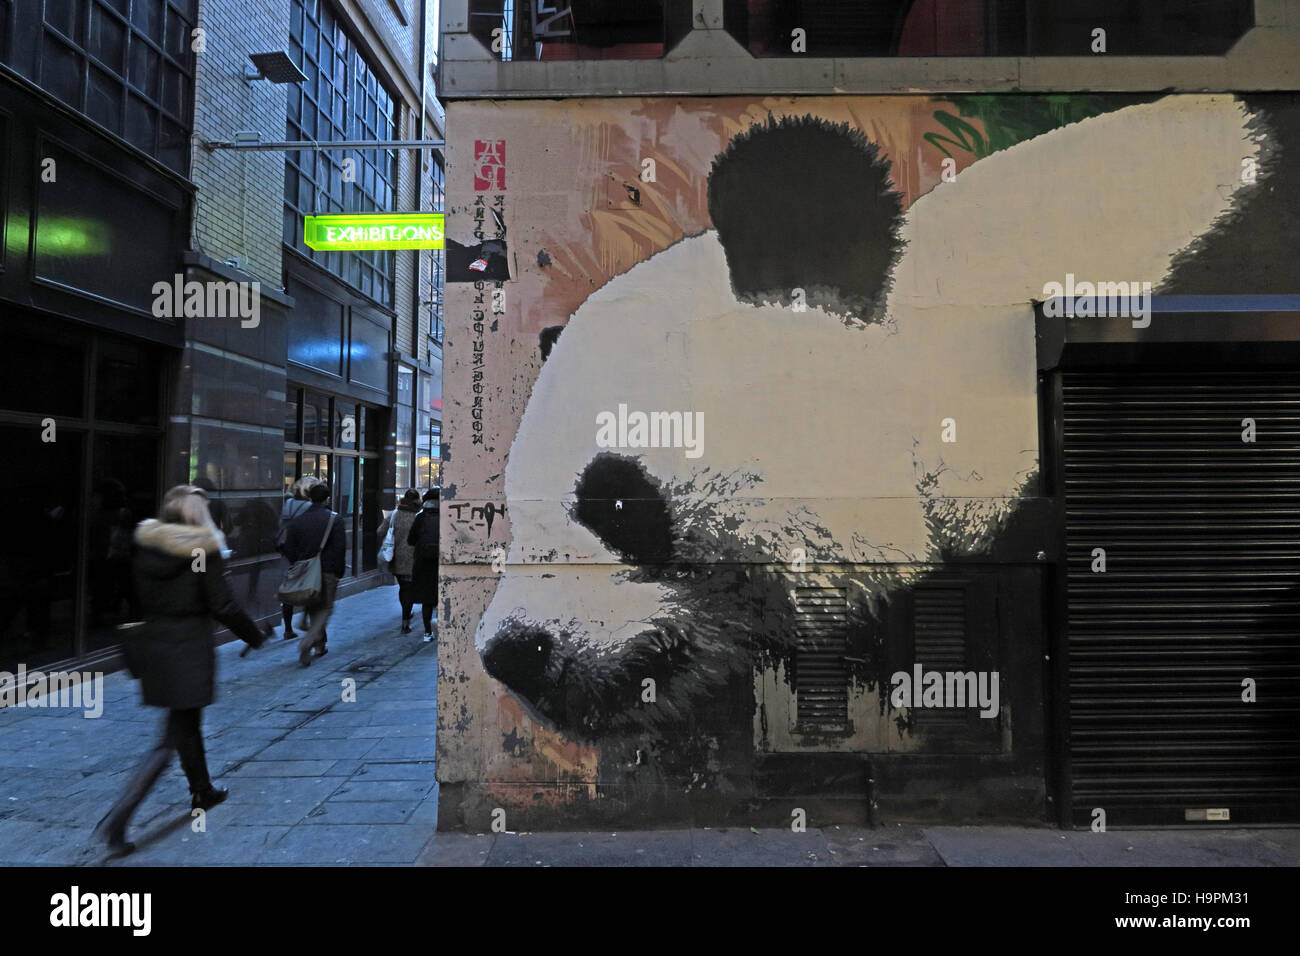 Panda graffiti,Mitchell Lane,Glasgow,Scotland,UK Stock Photo